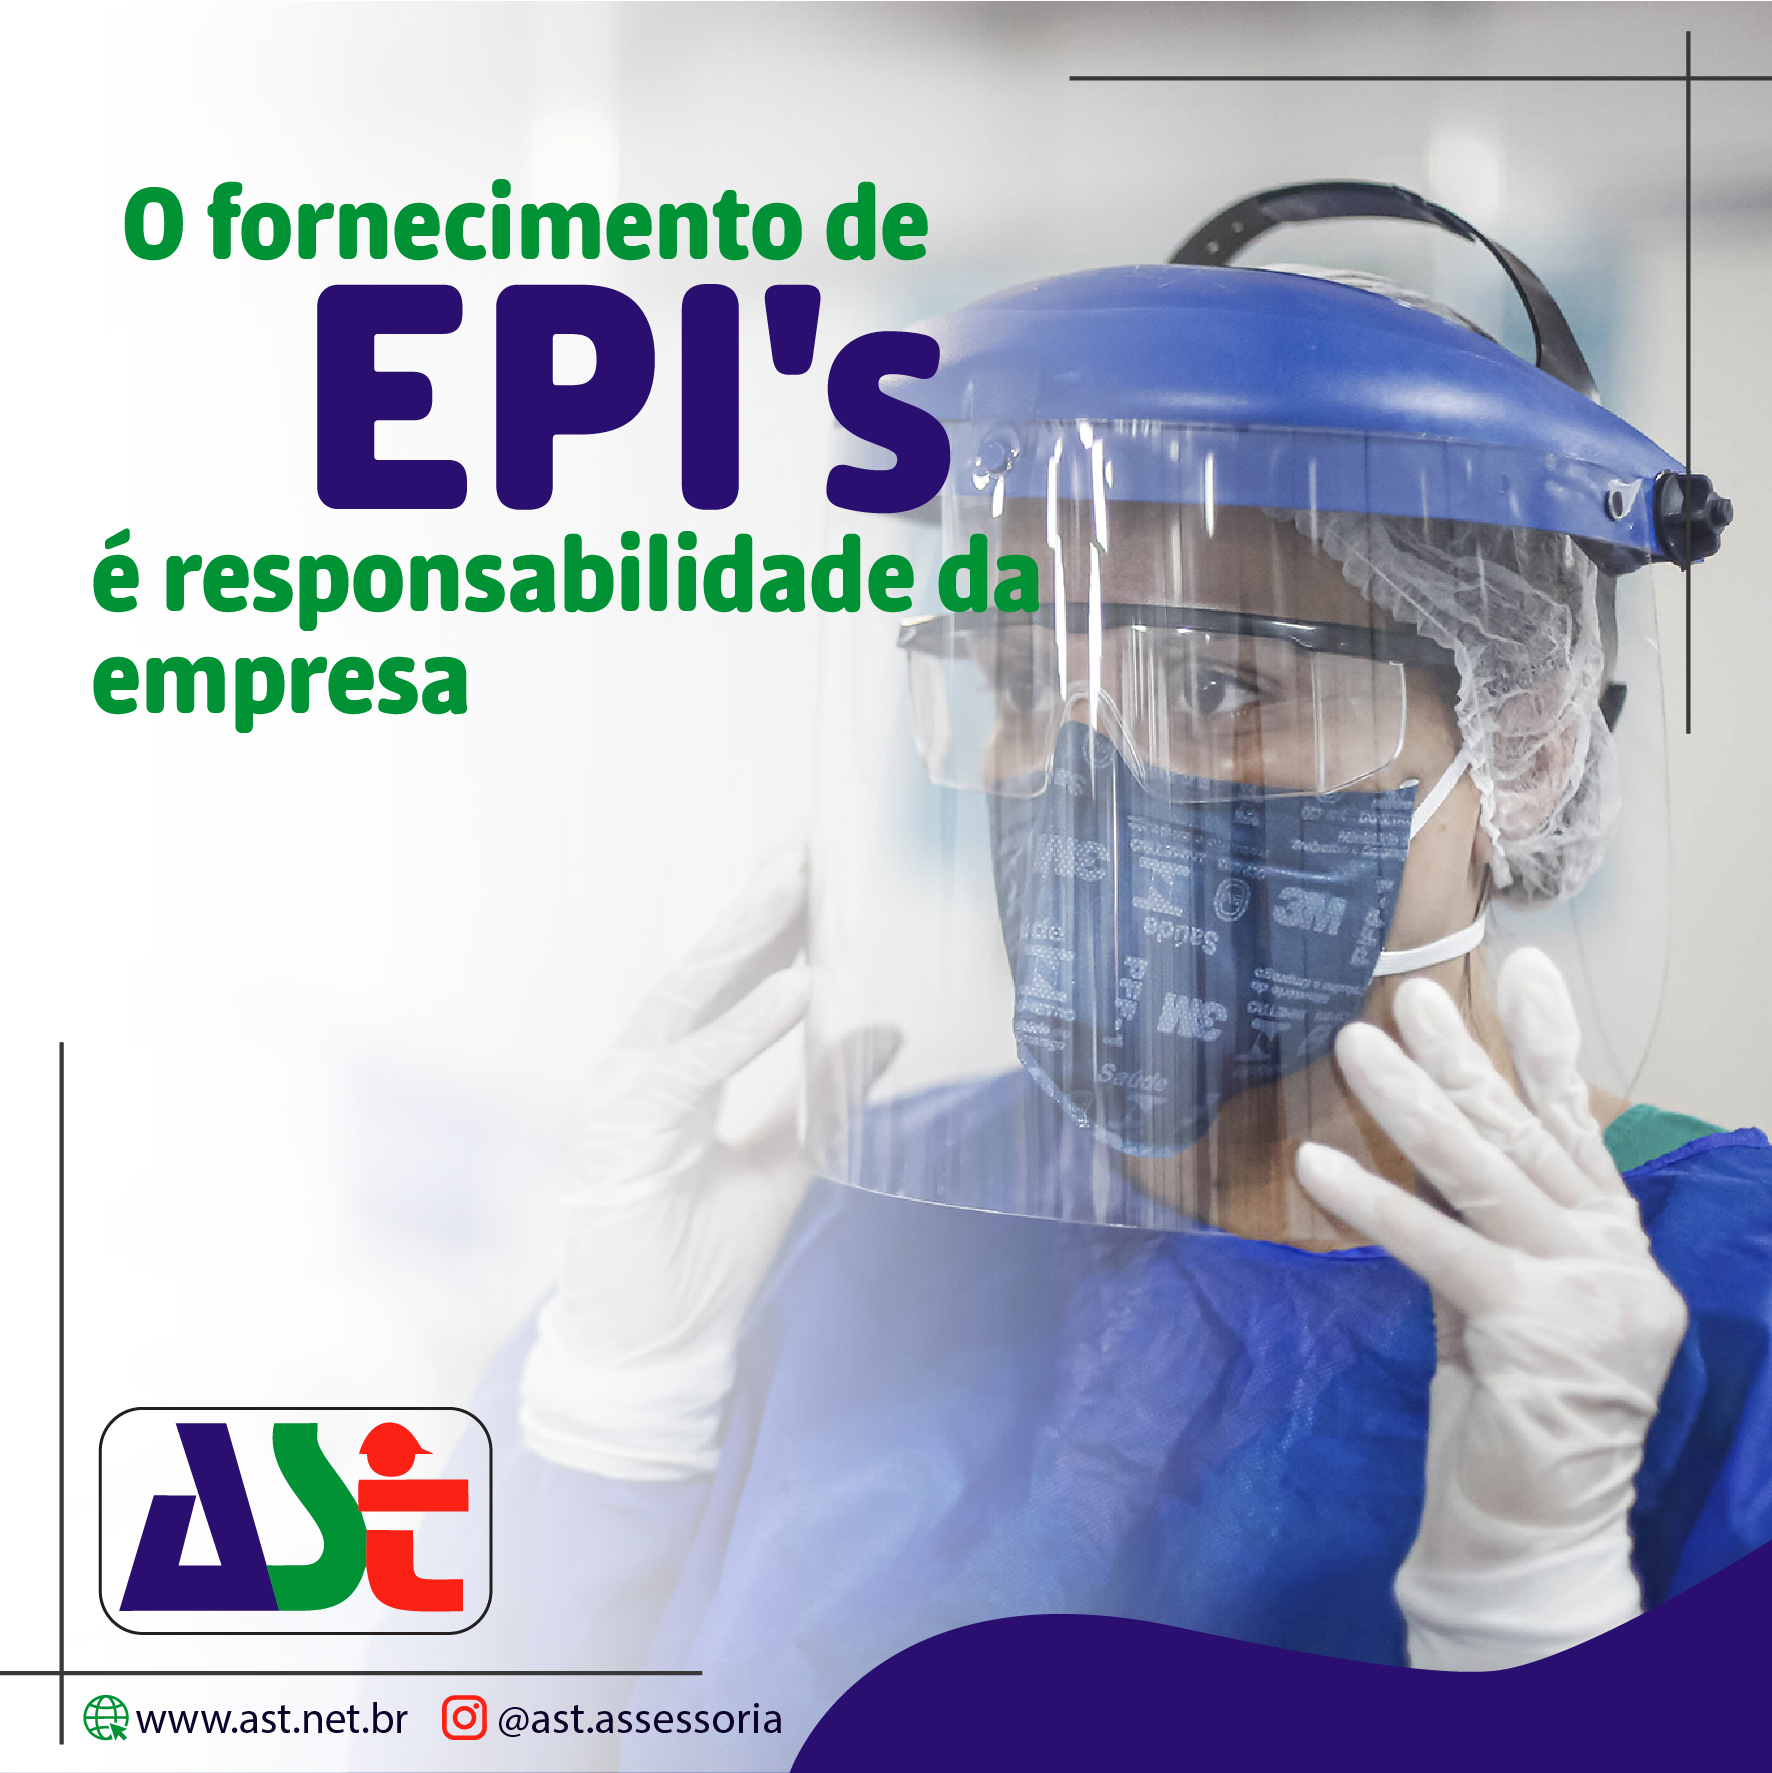 O fornecimento de EPI's é responsabilidade da empresa